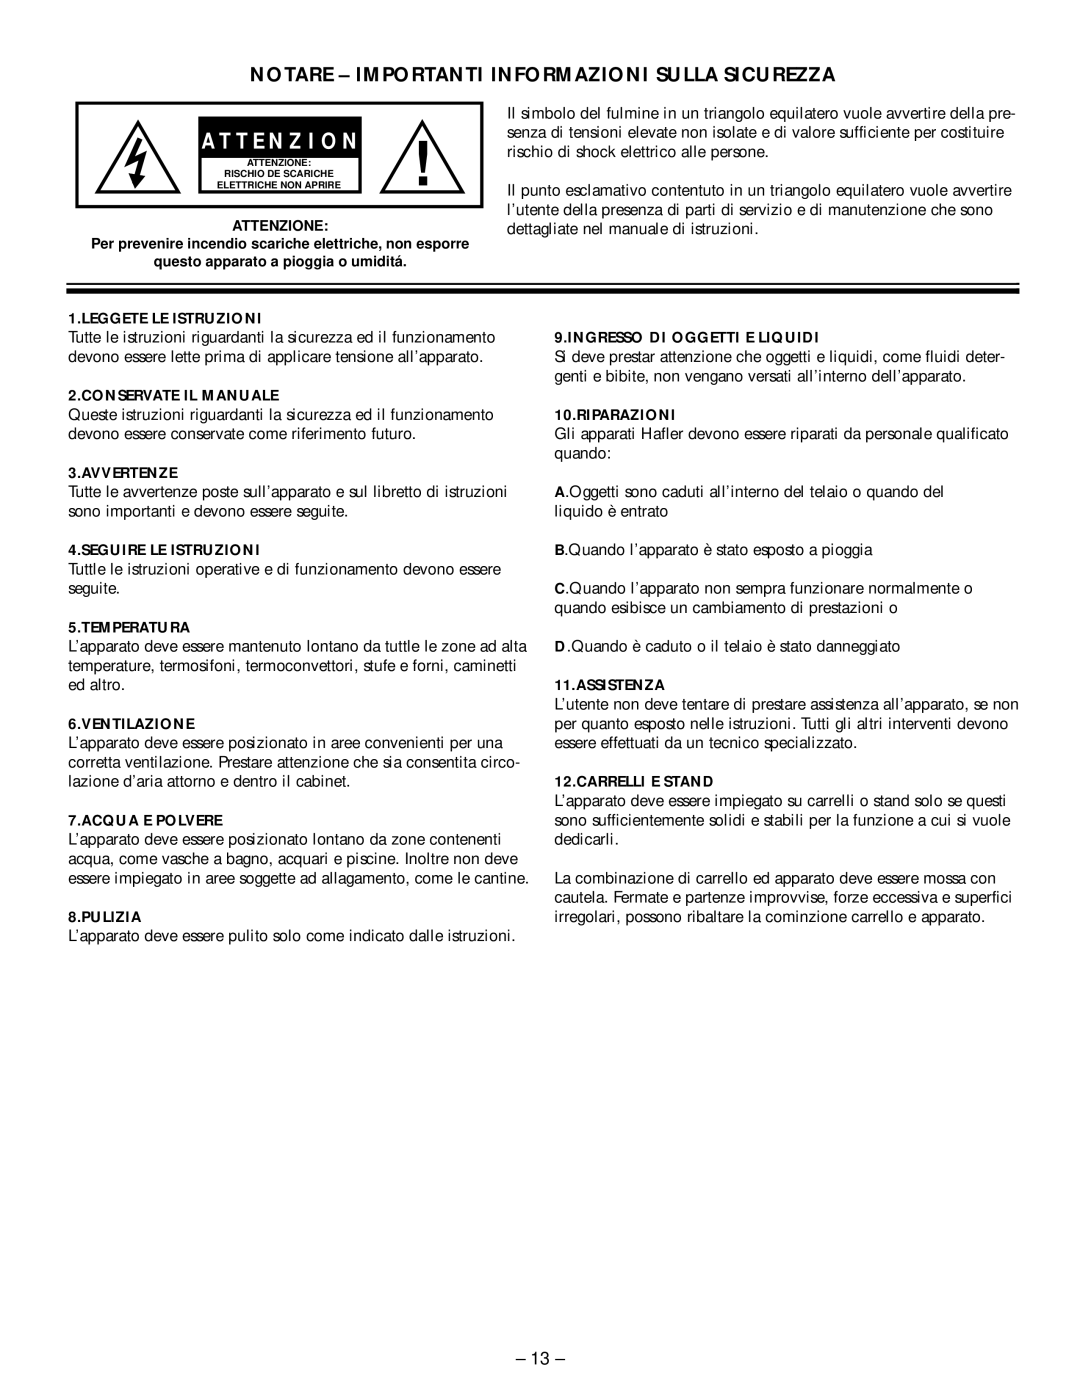 Hafler M5 manual A T T E N Z I O N E, Notare - Importanti Informazioni Sulla Sicurezza 